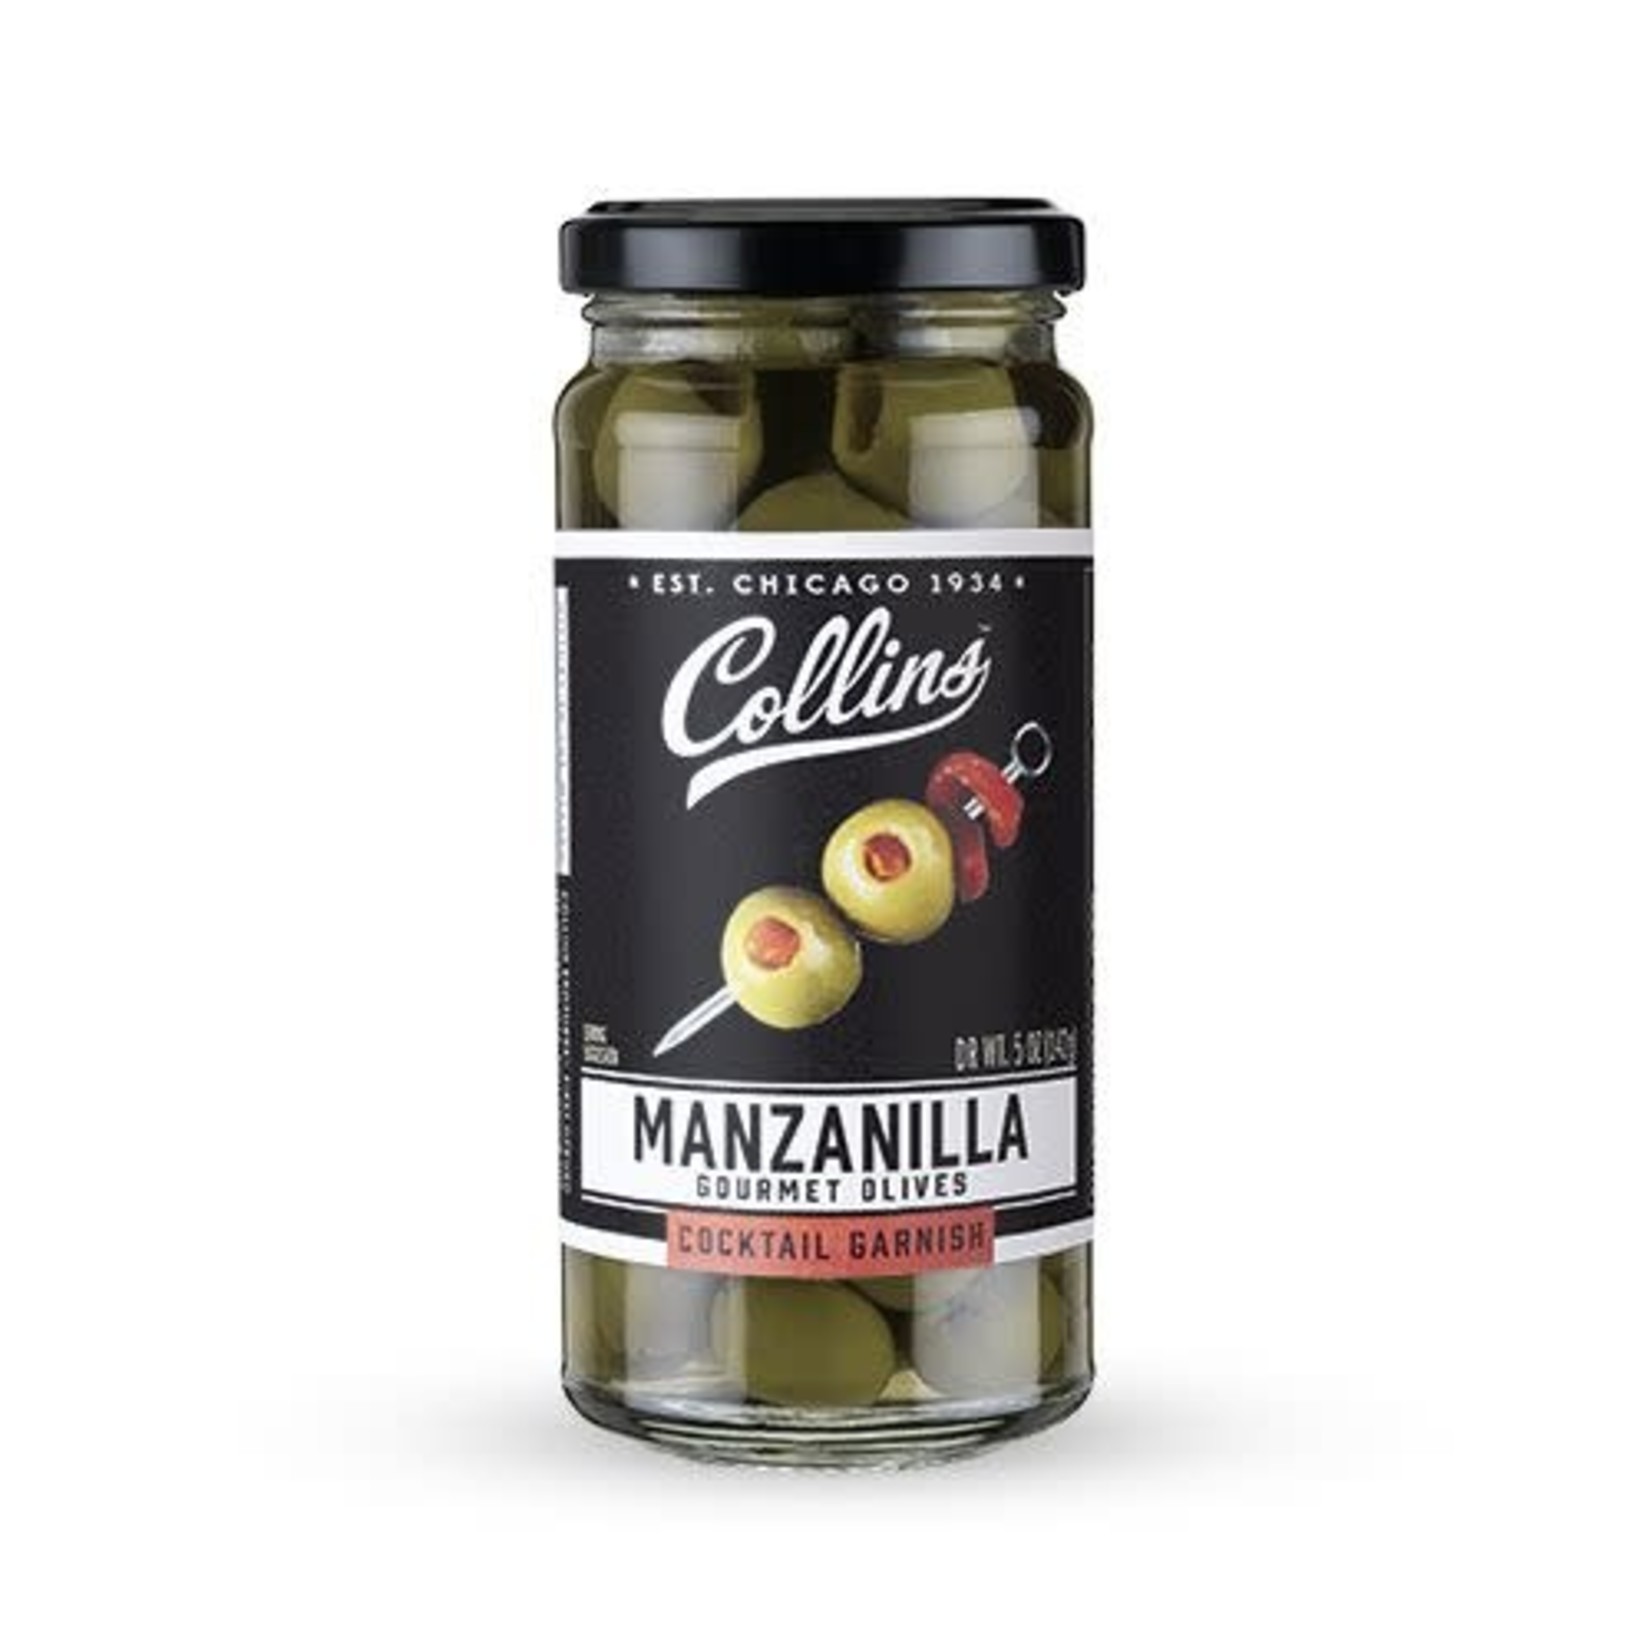 Collins Manzanilla Martini Pimento Olives 5oz